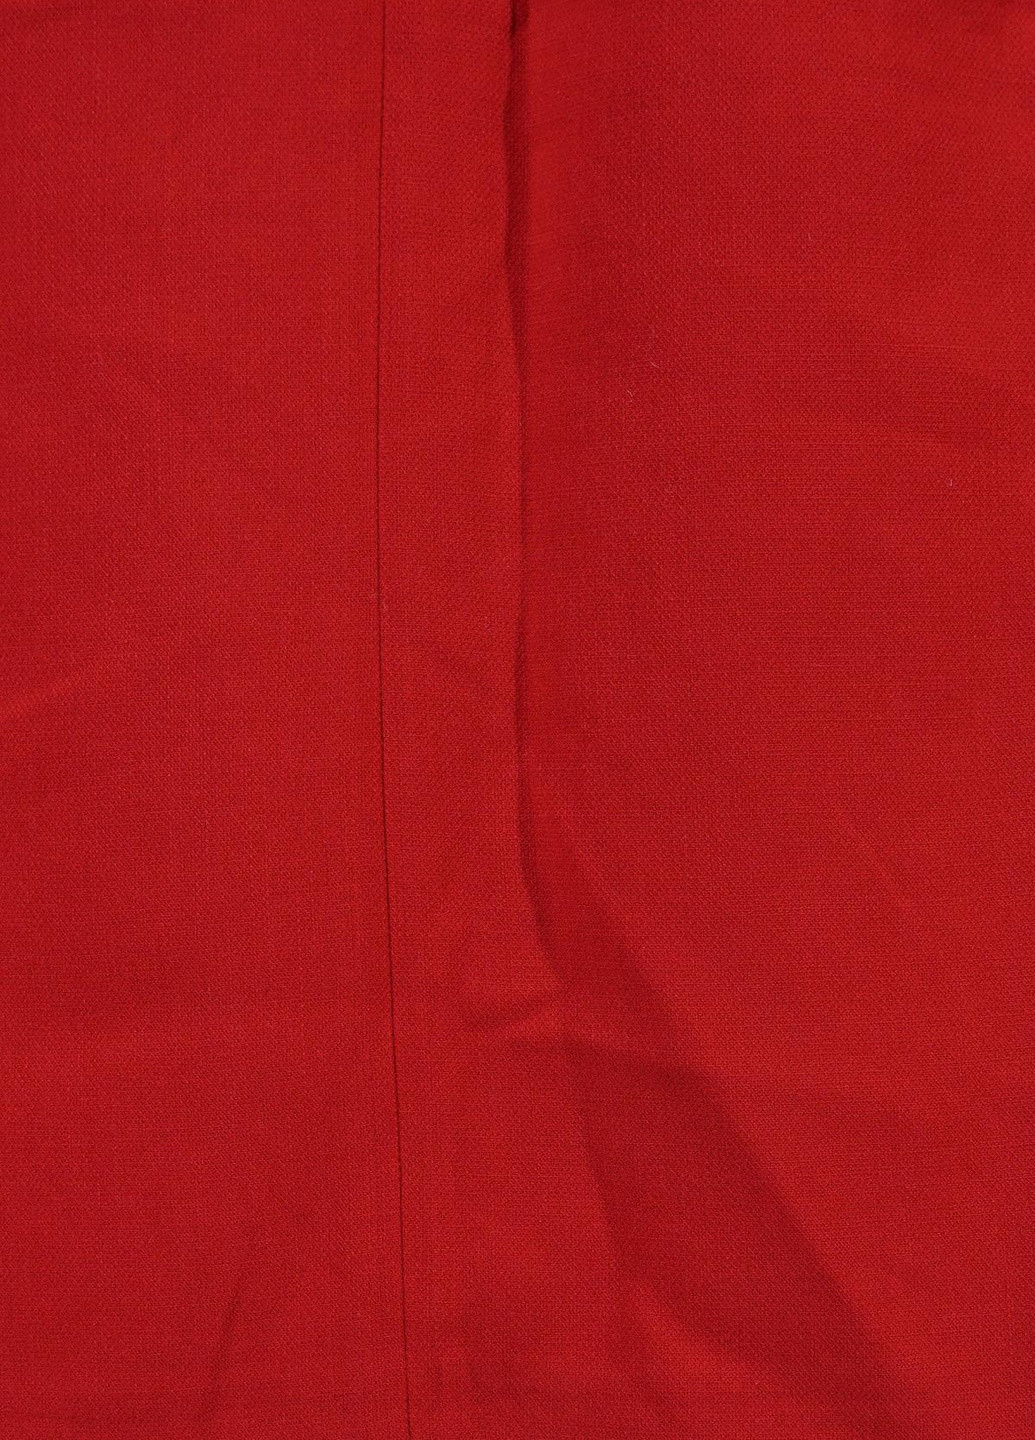 Красная юбка Olsen